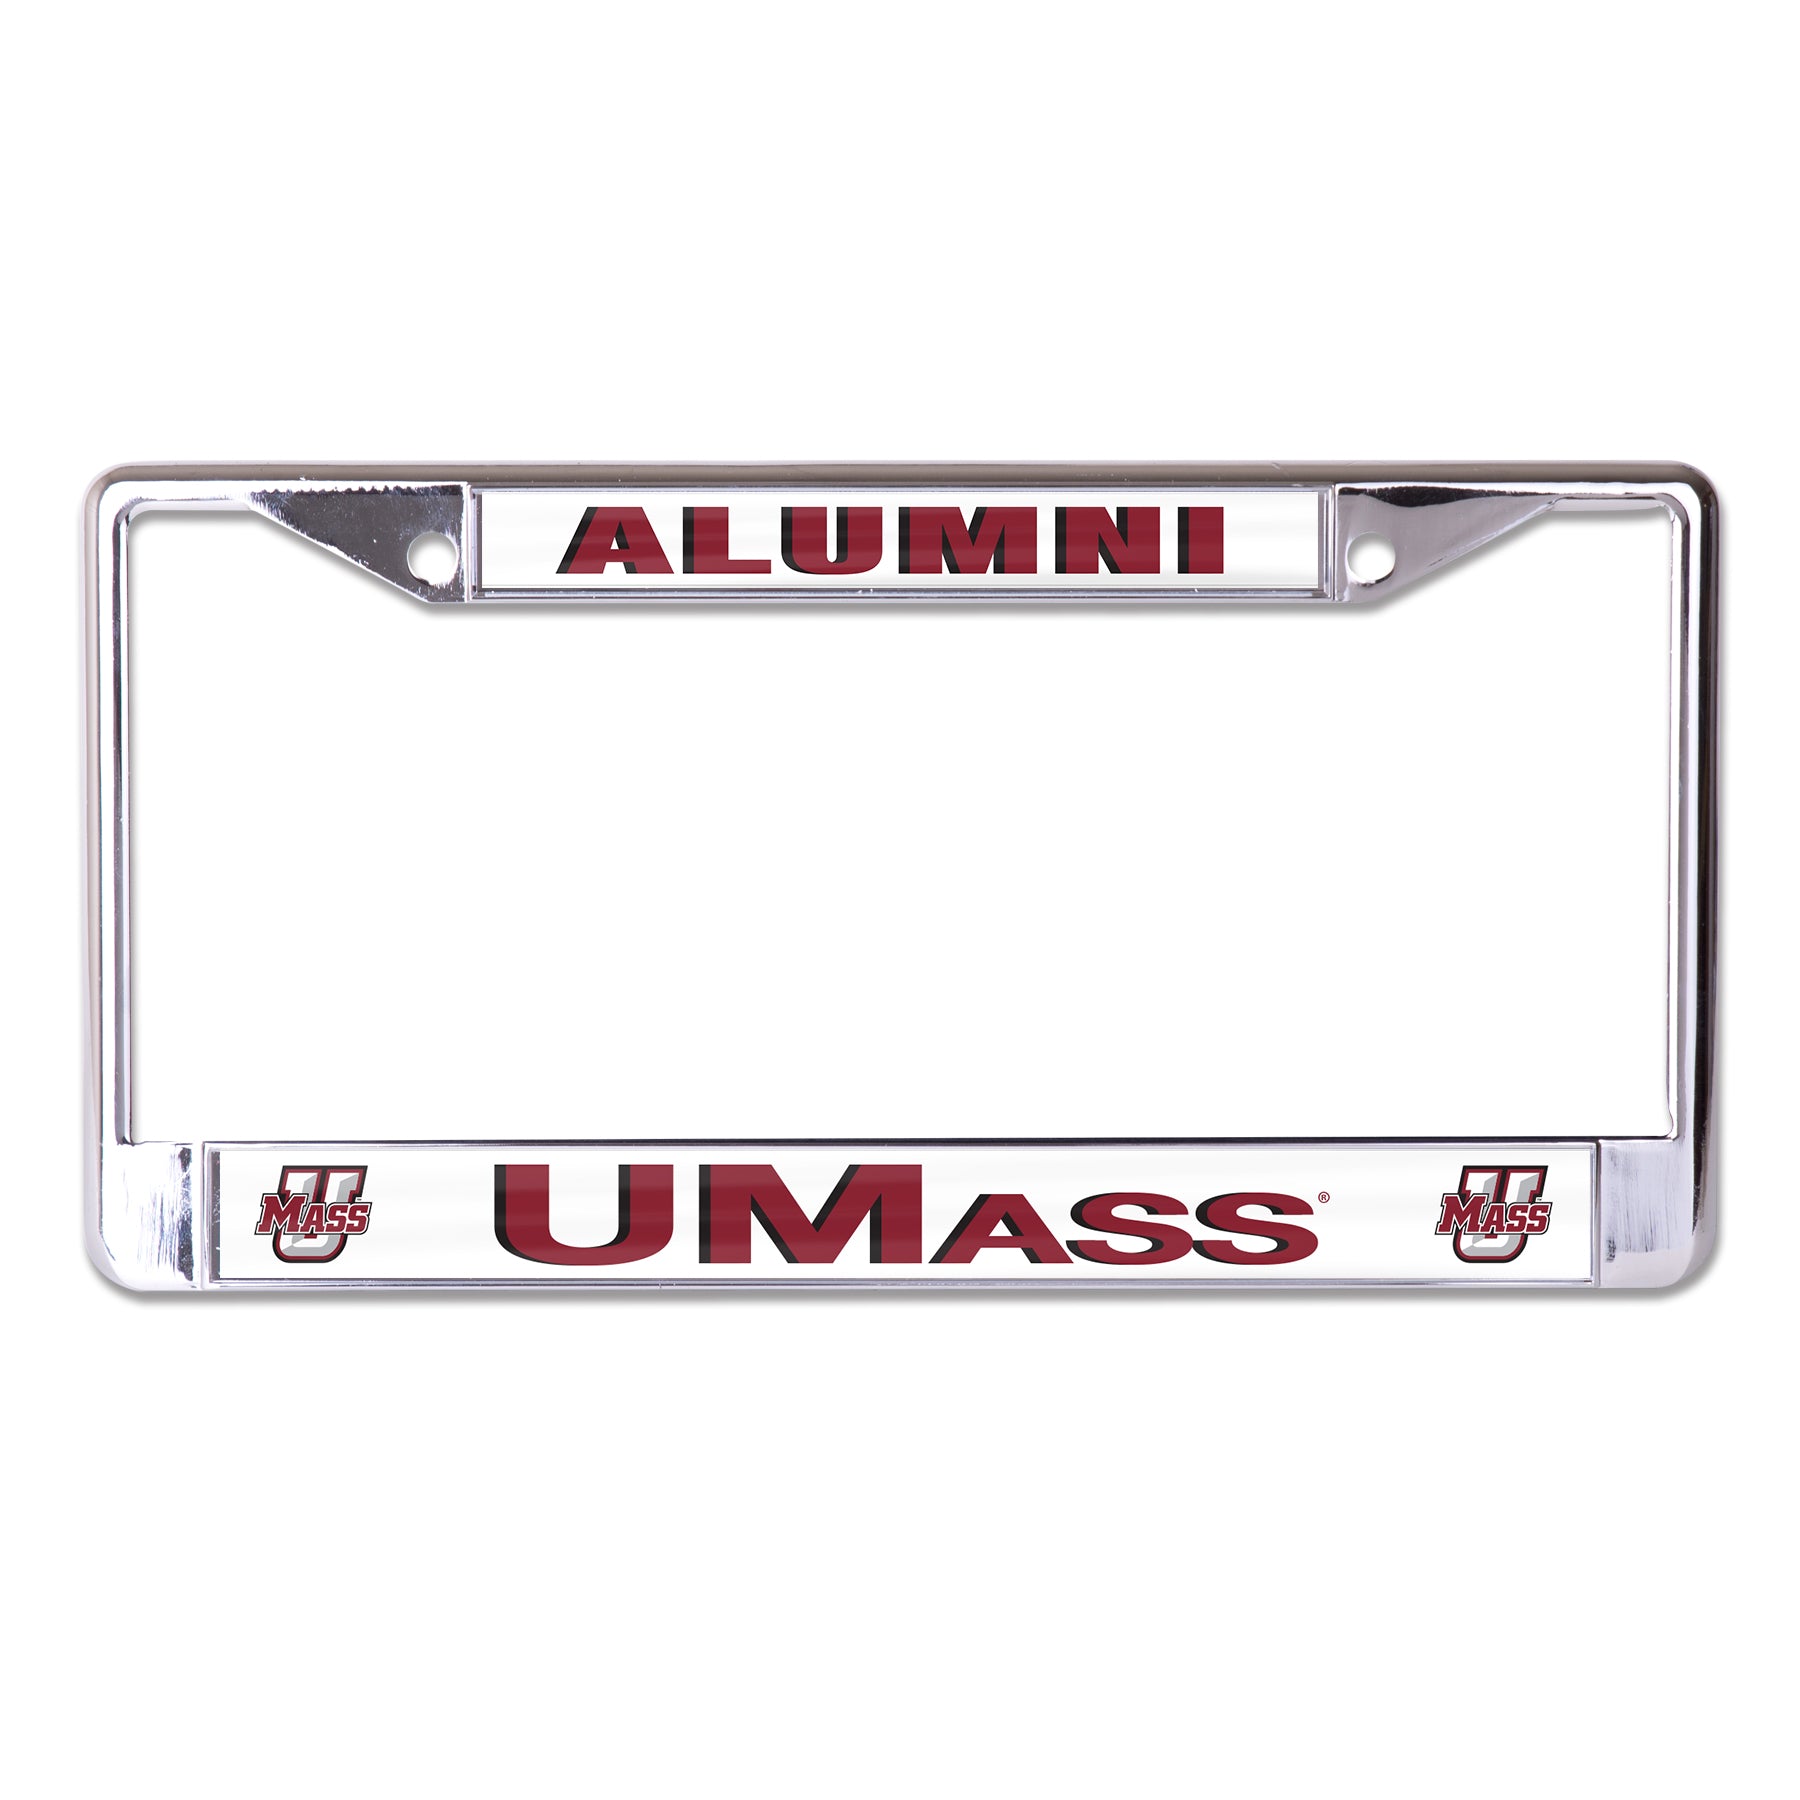 University of Massachusetts Amherst Alumni On White Chrome License Plate Frame